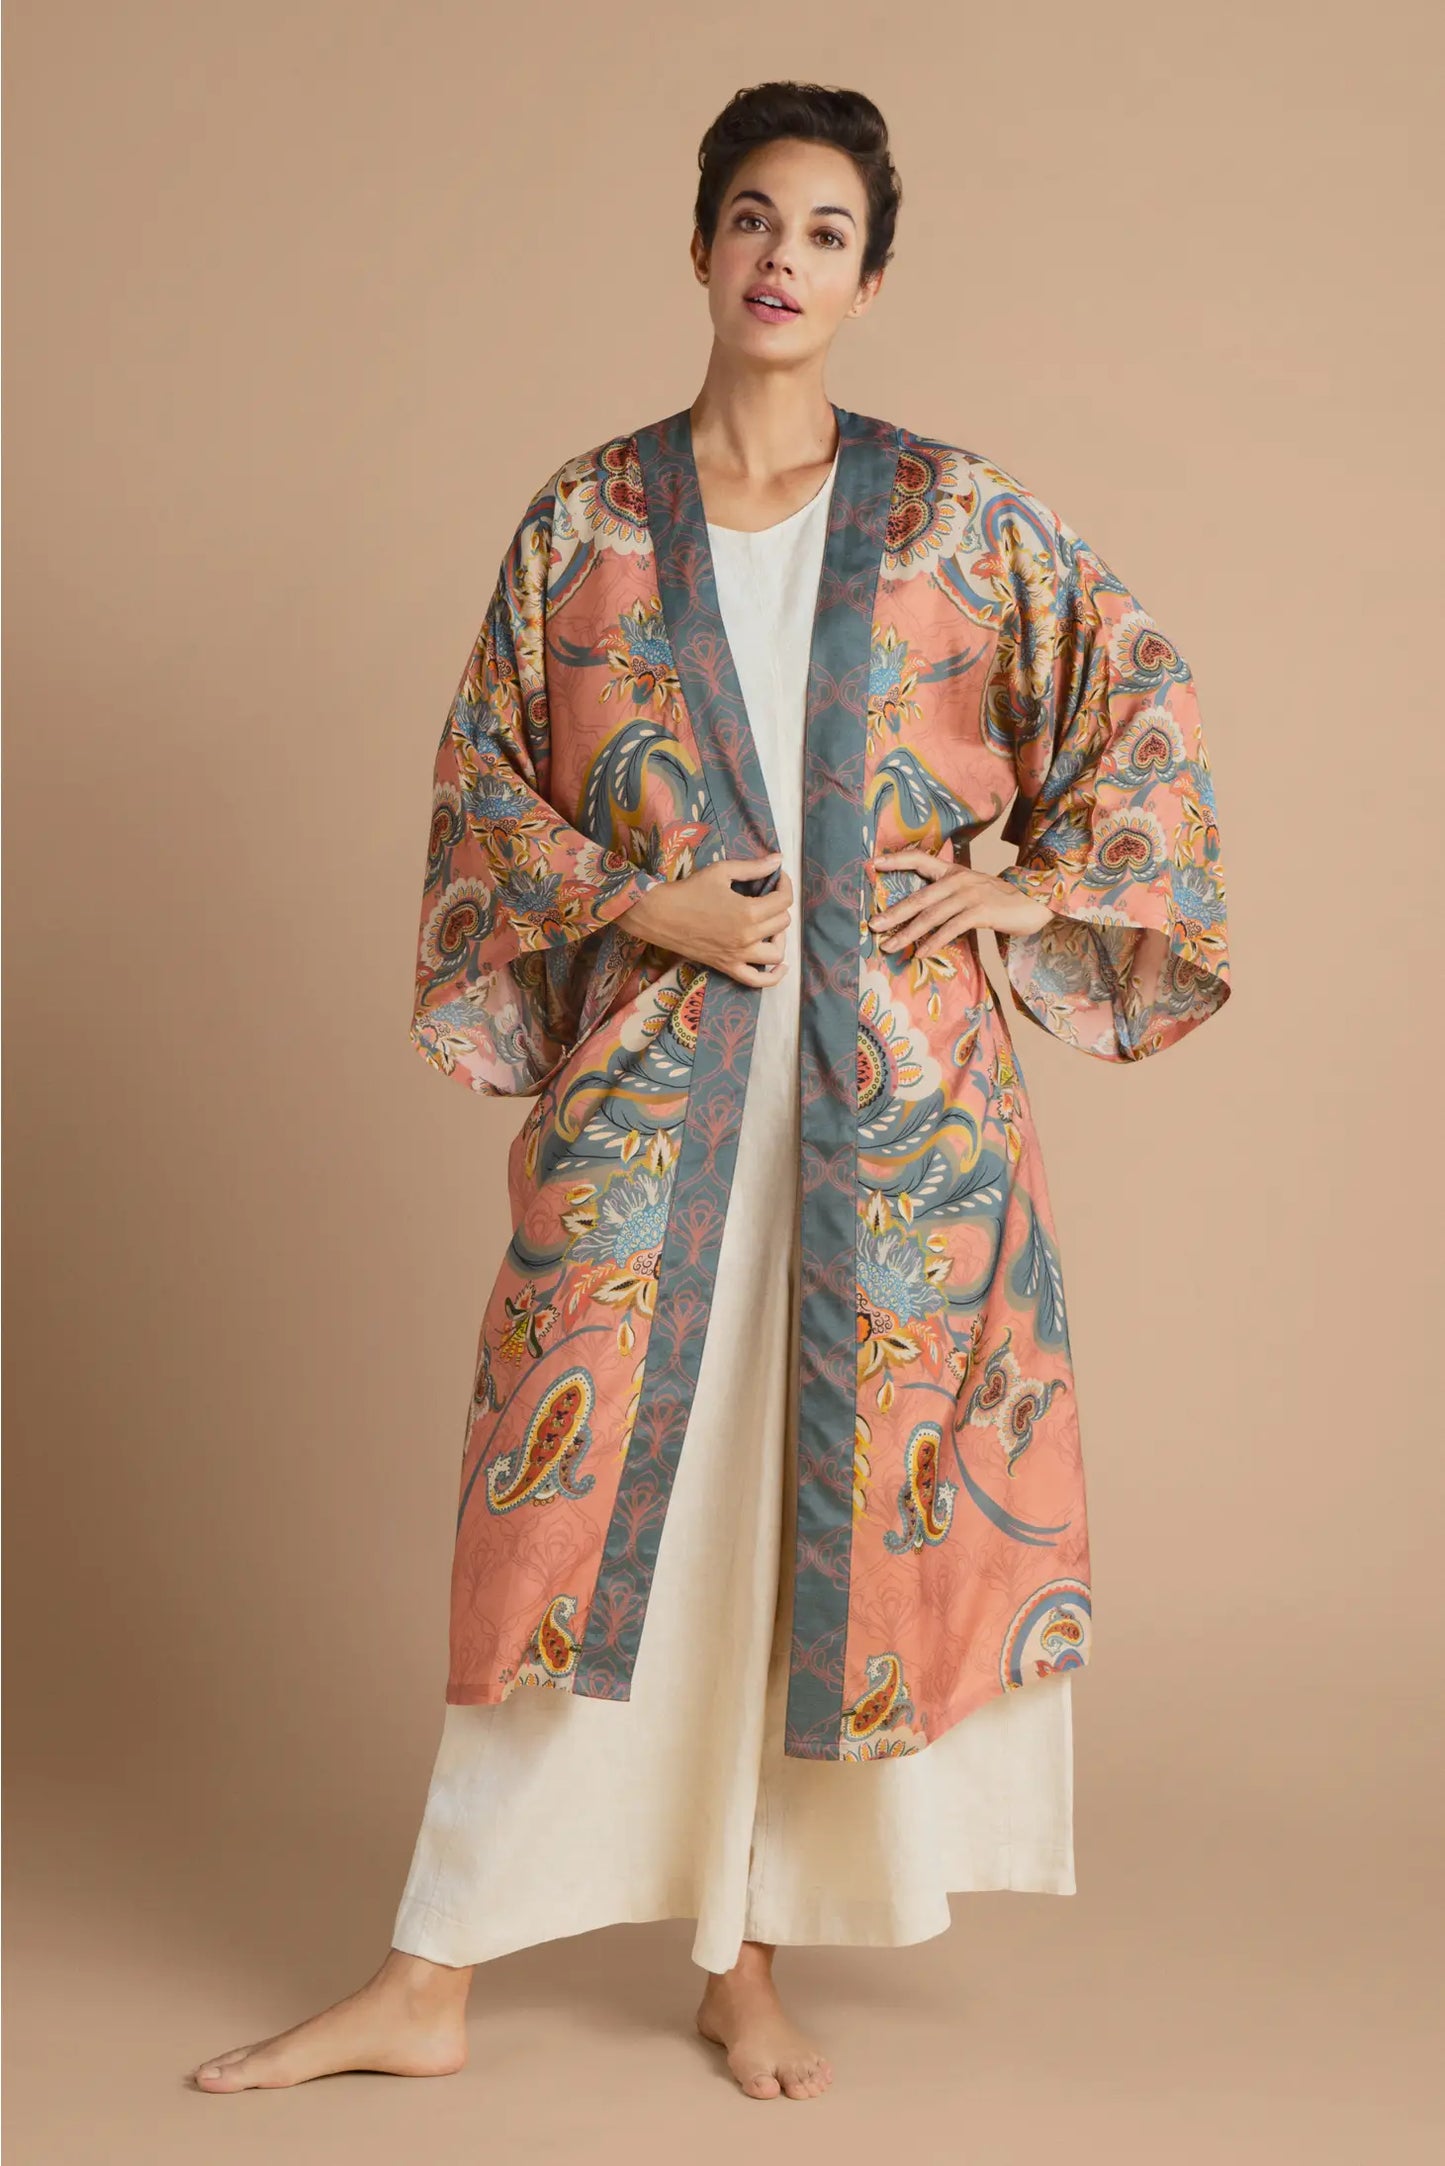 Kimono Gown- Mediterranean Paisley Kimono Gown - Coral